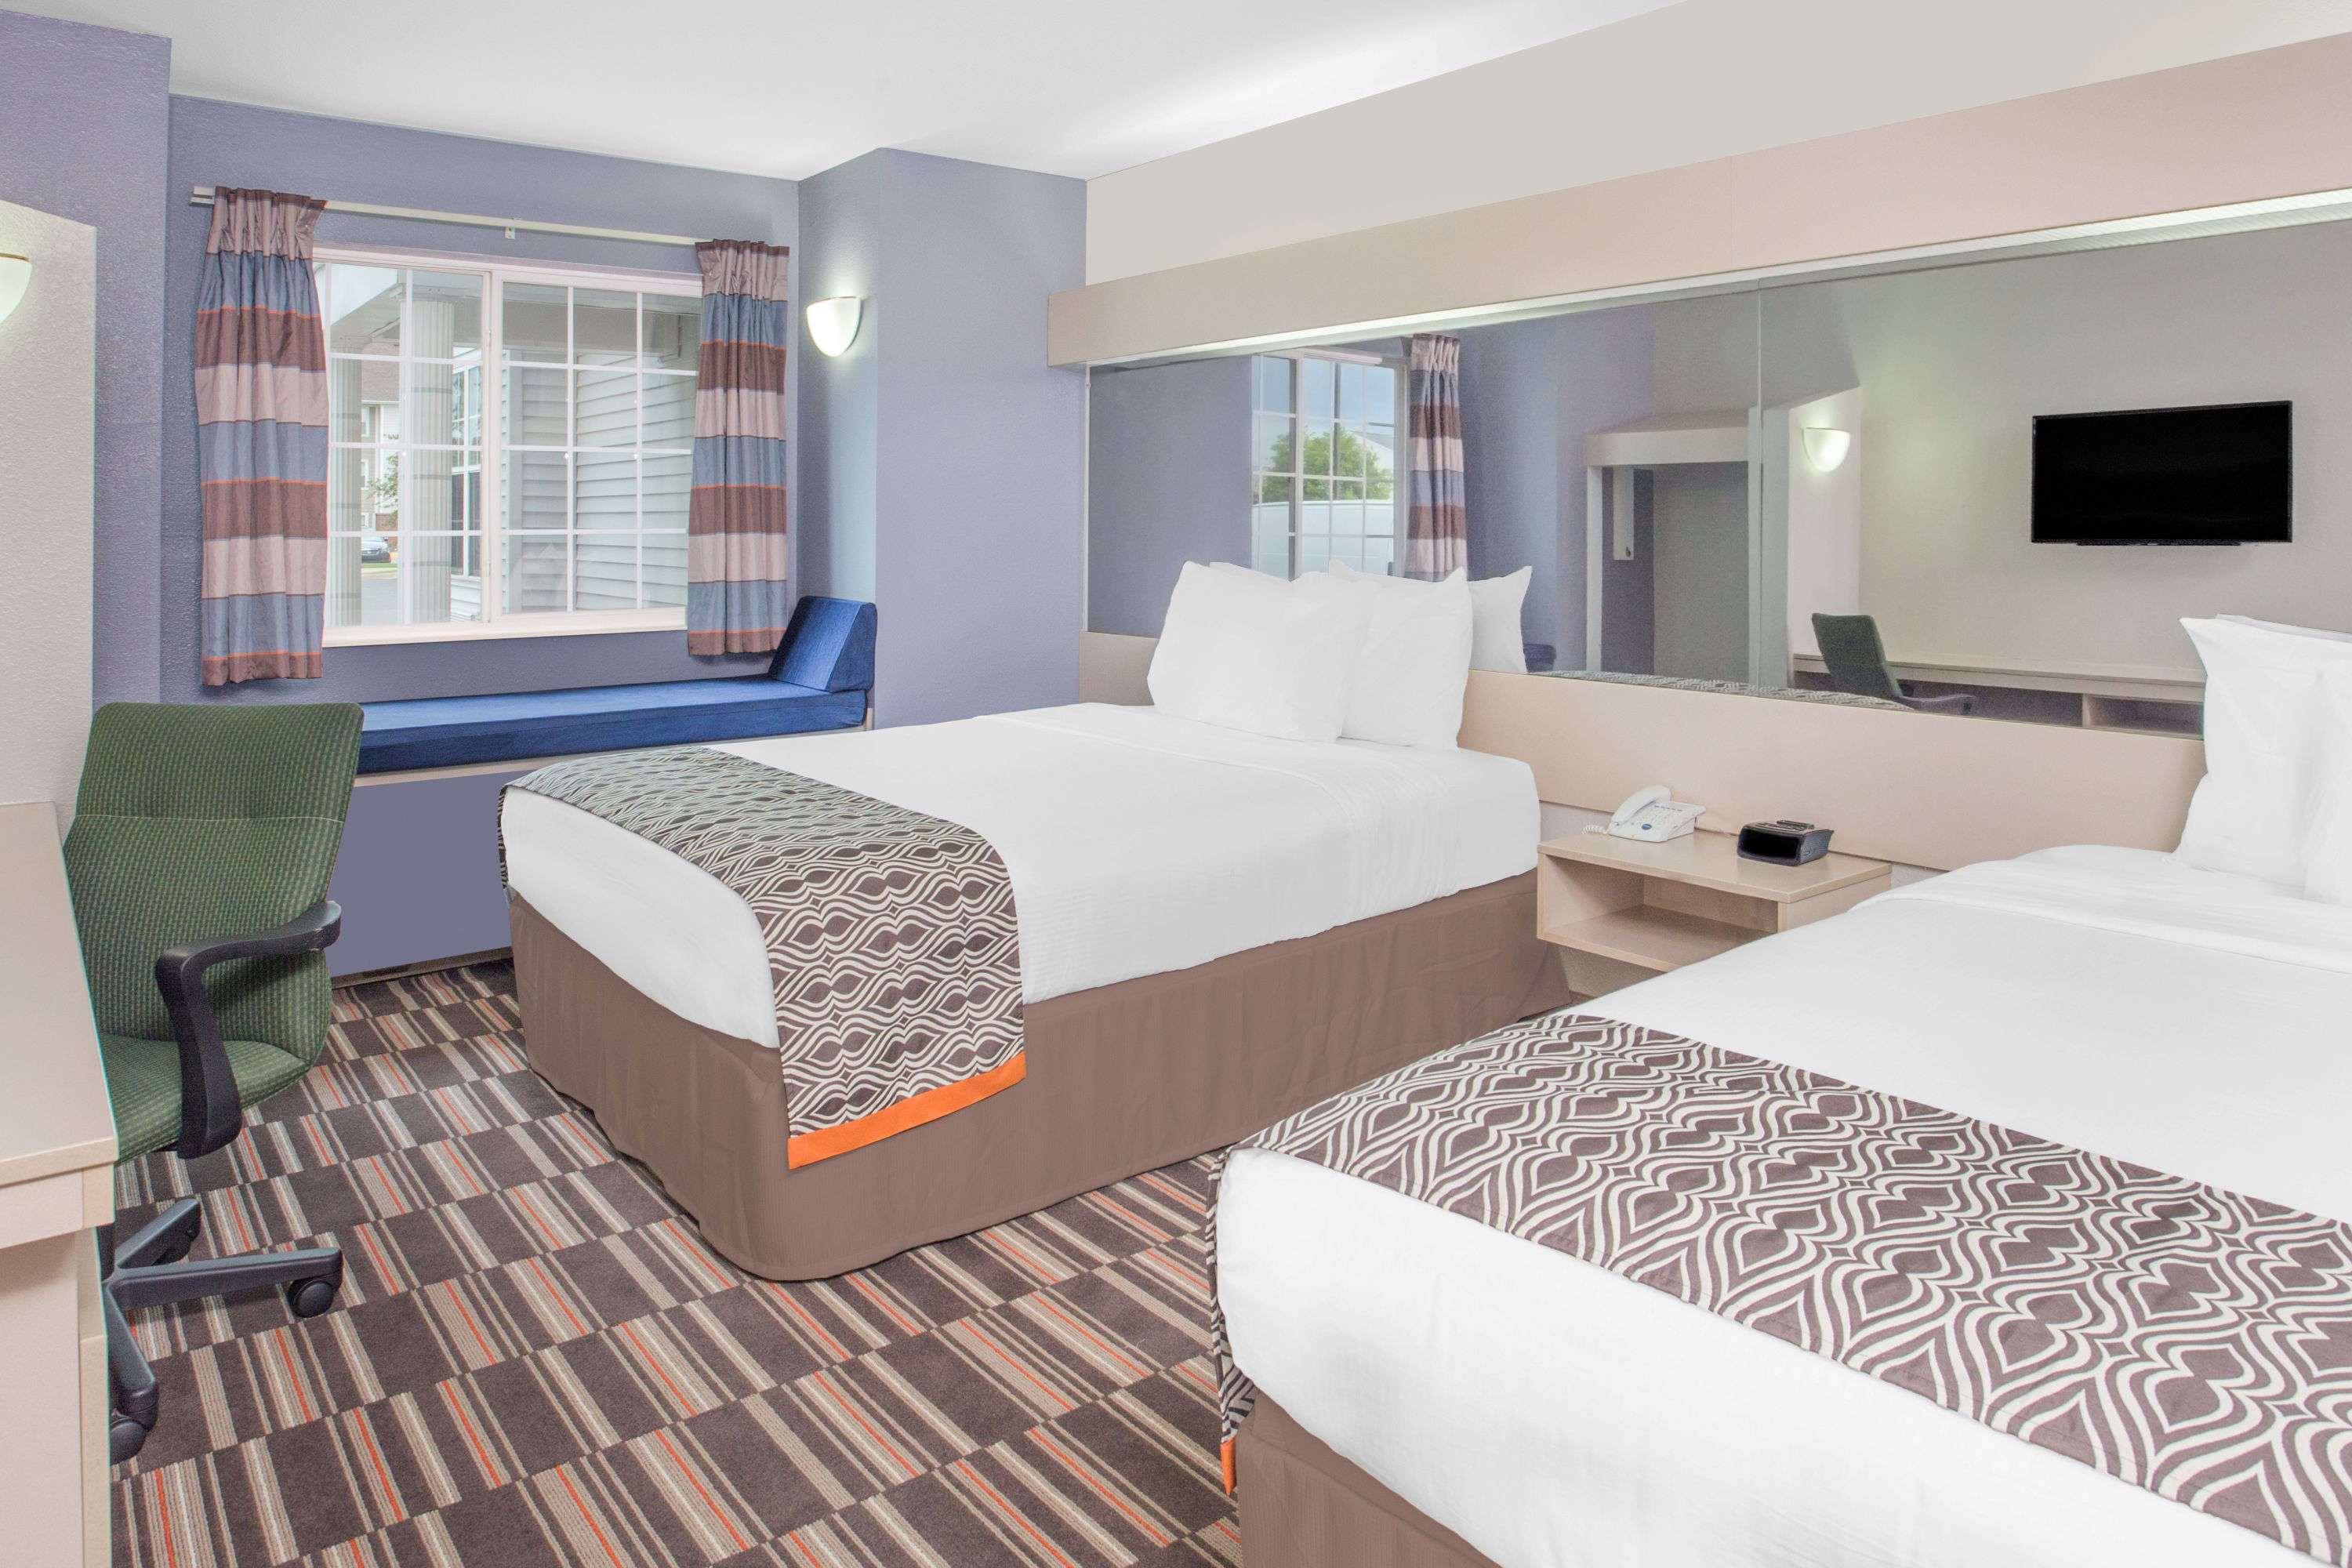 Microtel Inn & Suites by Wyndham Appleton